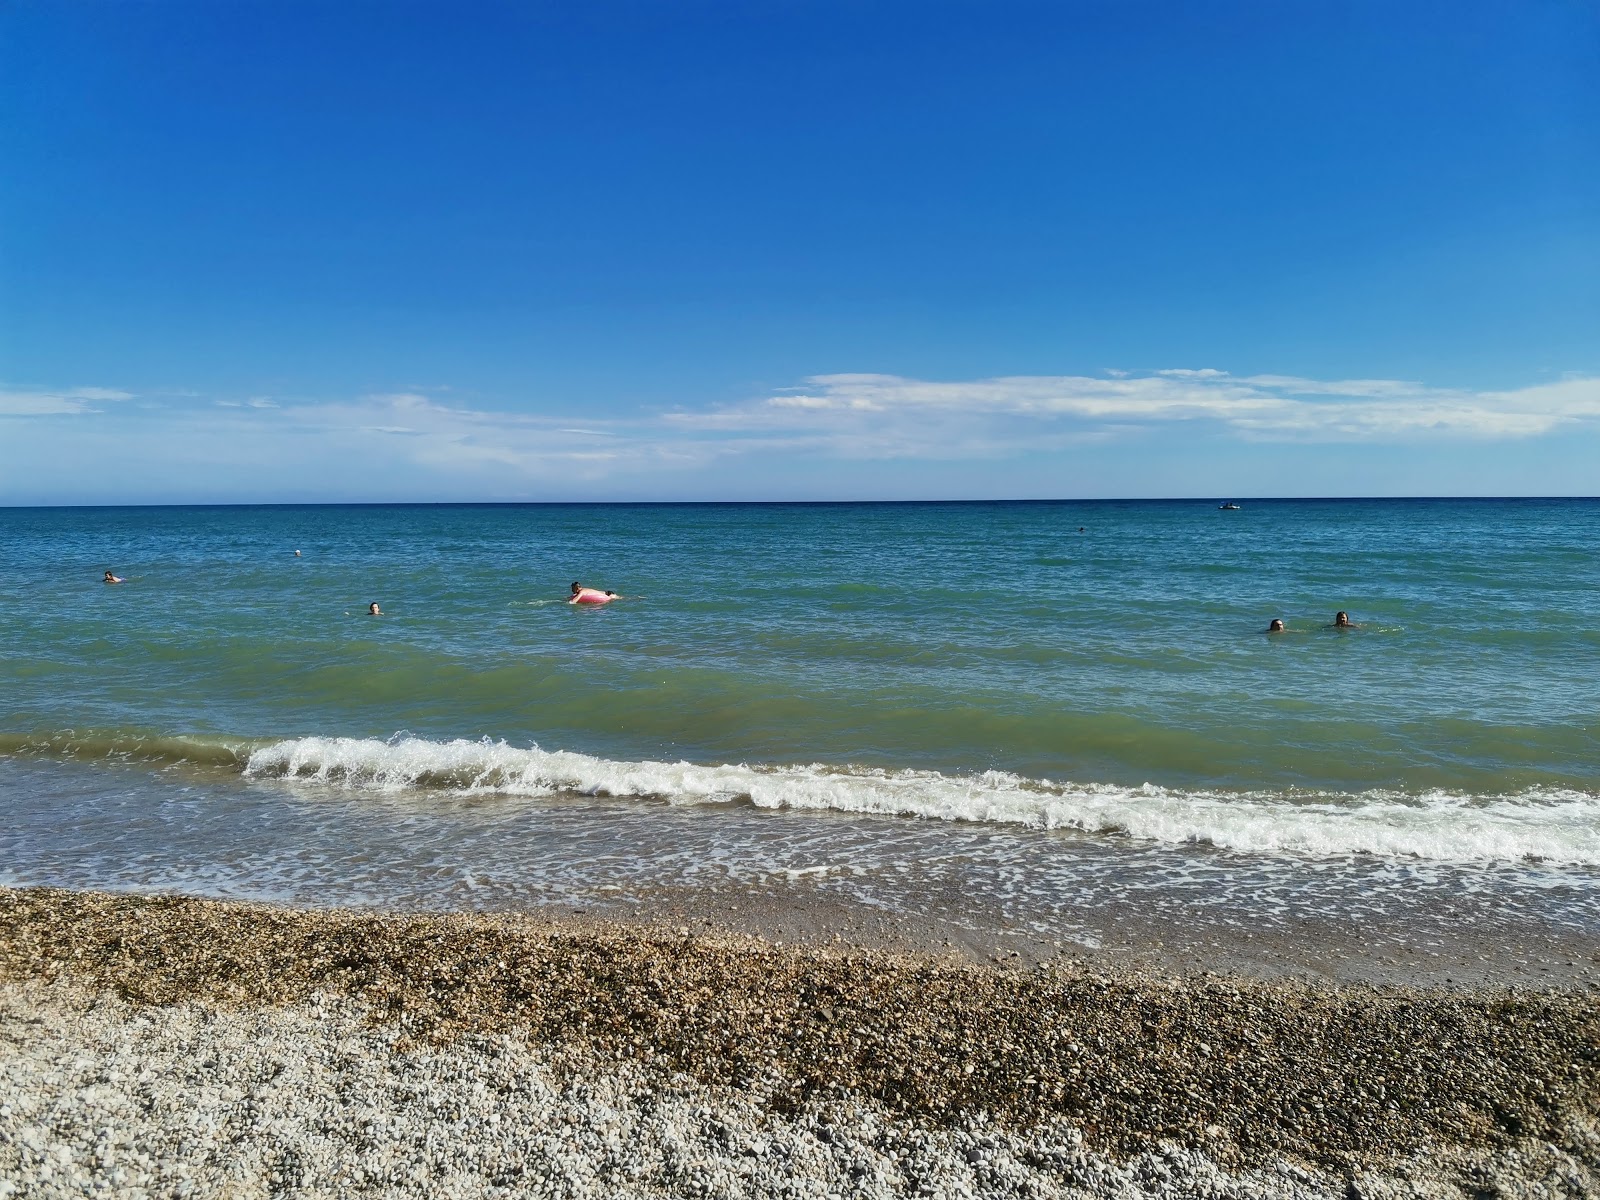 Plazh Achisu'in fotoğrafı geniş plaj ile birlikte